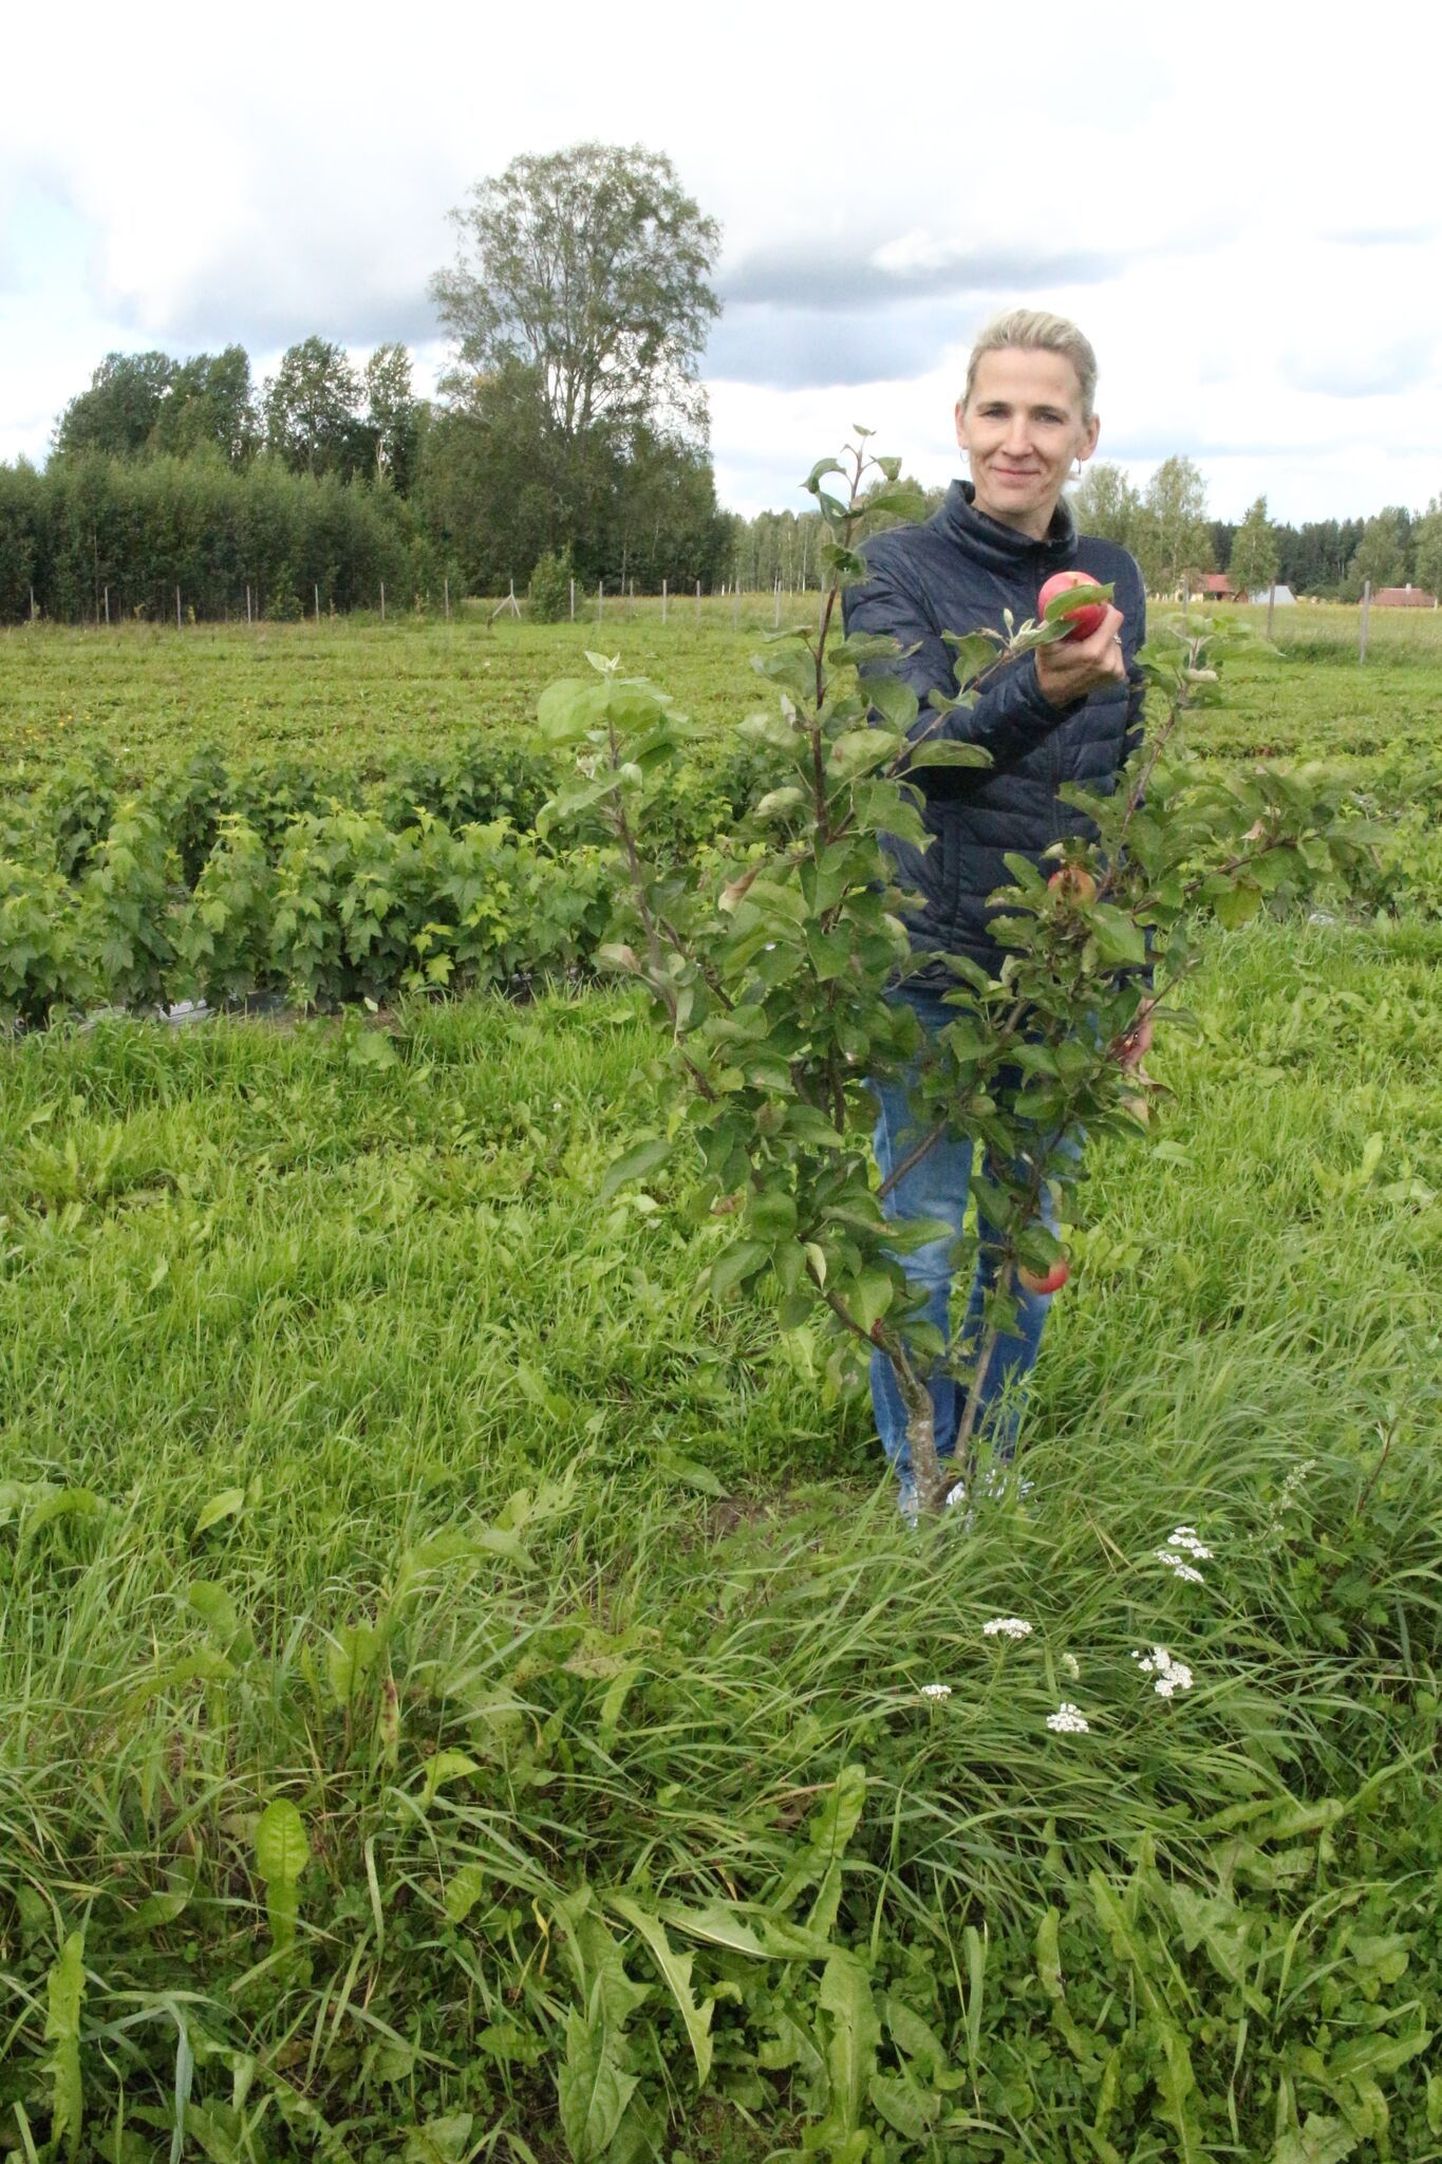 Taarapõllu talu tegevjuhi Silvi Languse sõnul töötlevad nad aastas üle 70 tonni marju ja puuvilju. Eestis on Taarapõllu 
talu tooted müügil pea kõigis suuremates kaubanduskettides ja ökopoodides.